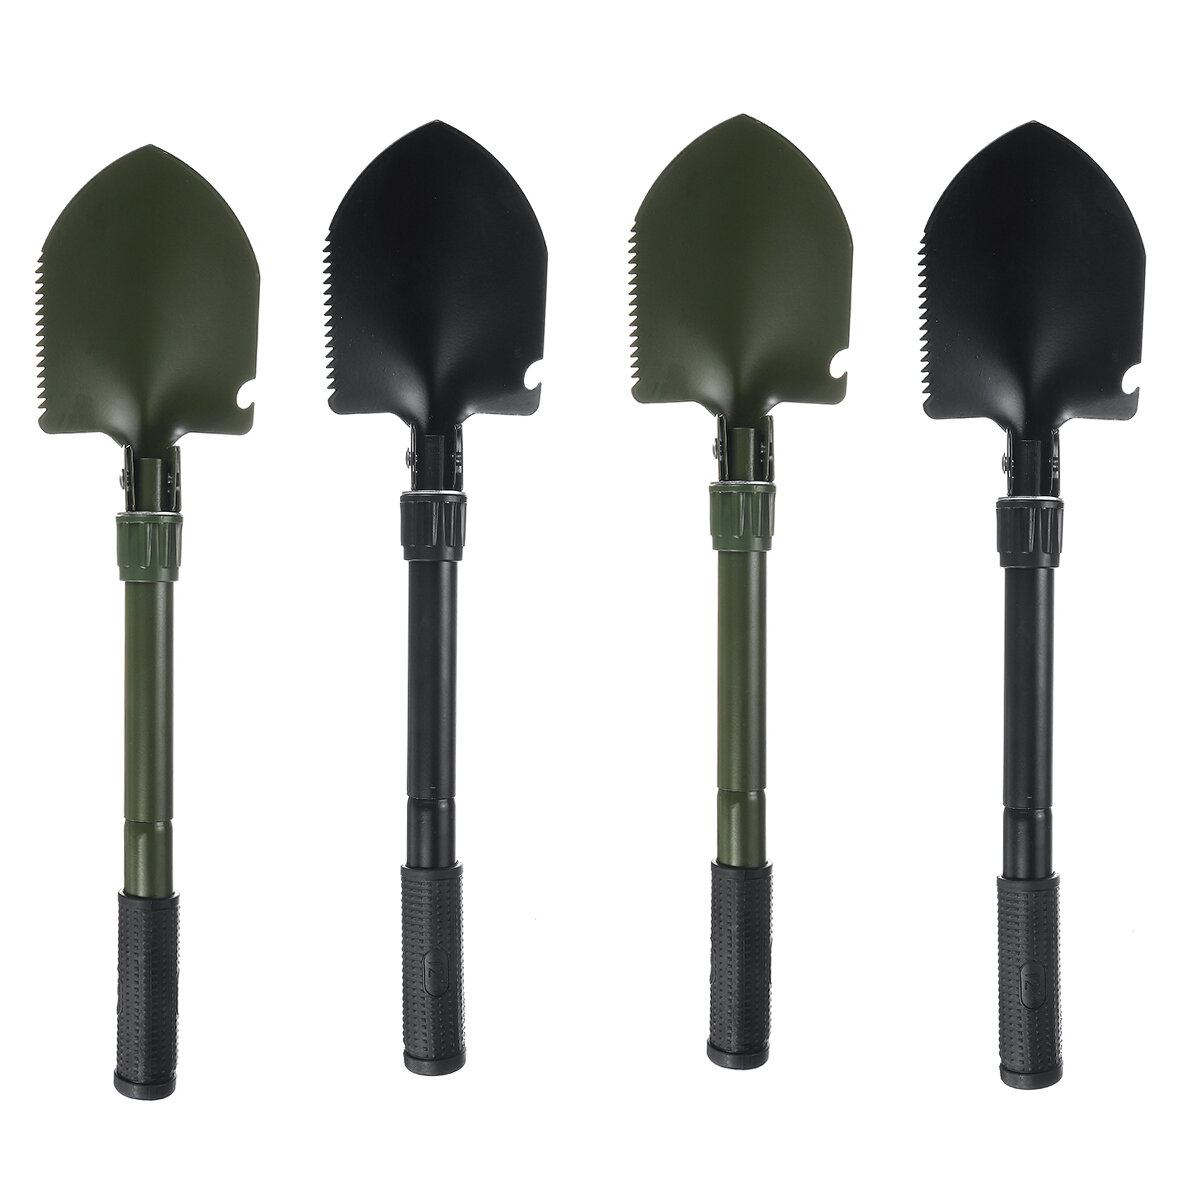 Mehrzweck-Schaufel Gartenwerkzeuge Outdoor-Survival faltbare Militär-Camping-Schaufel Verteidigungs-Sicherheitswerkzeuge